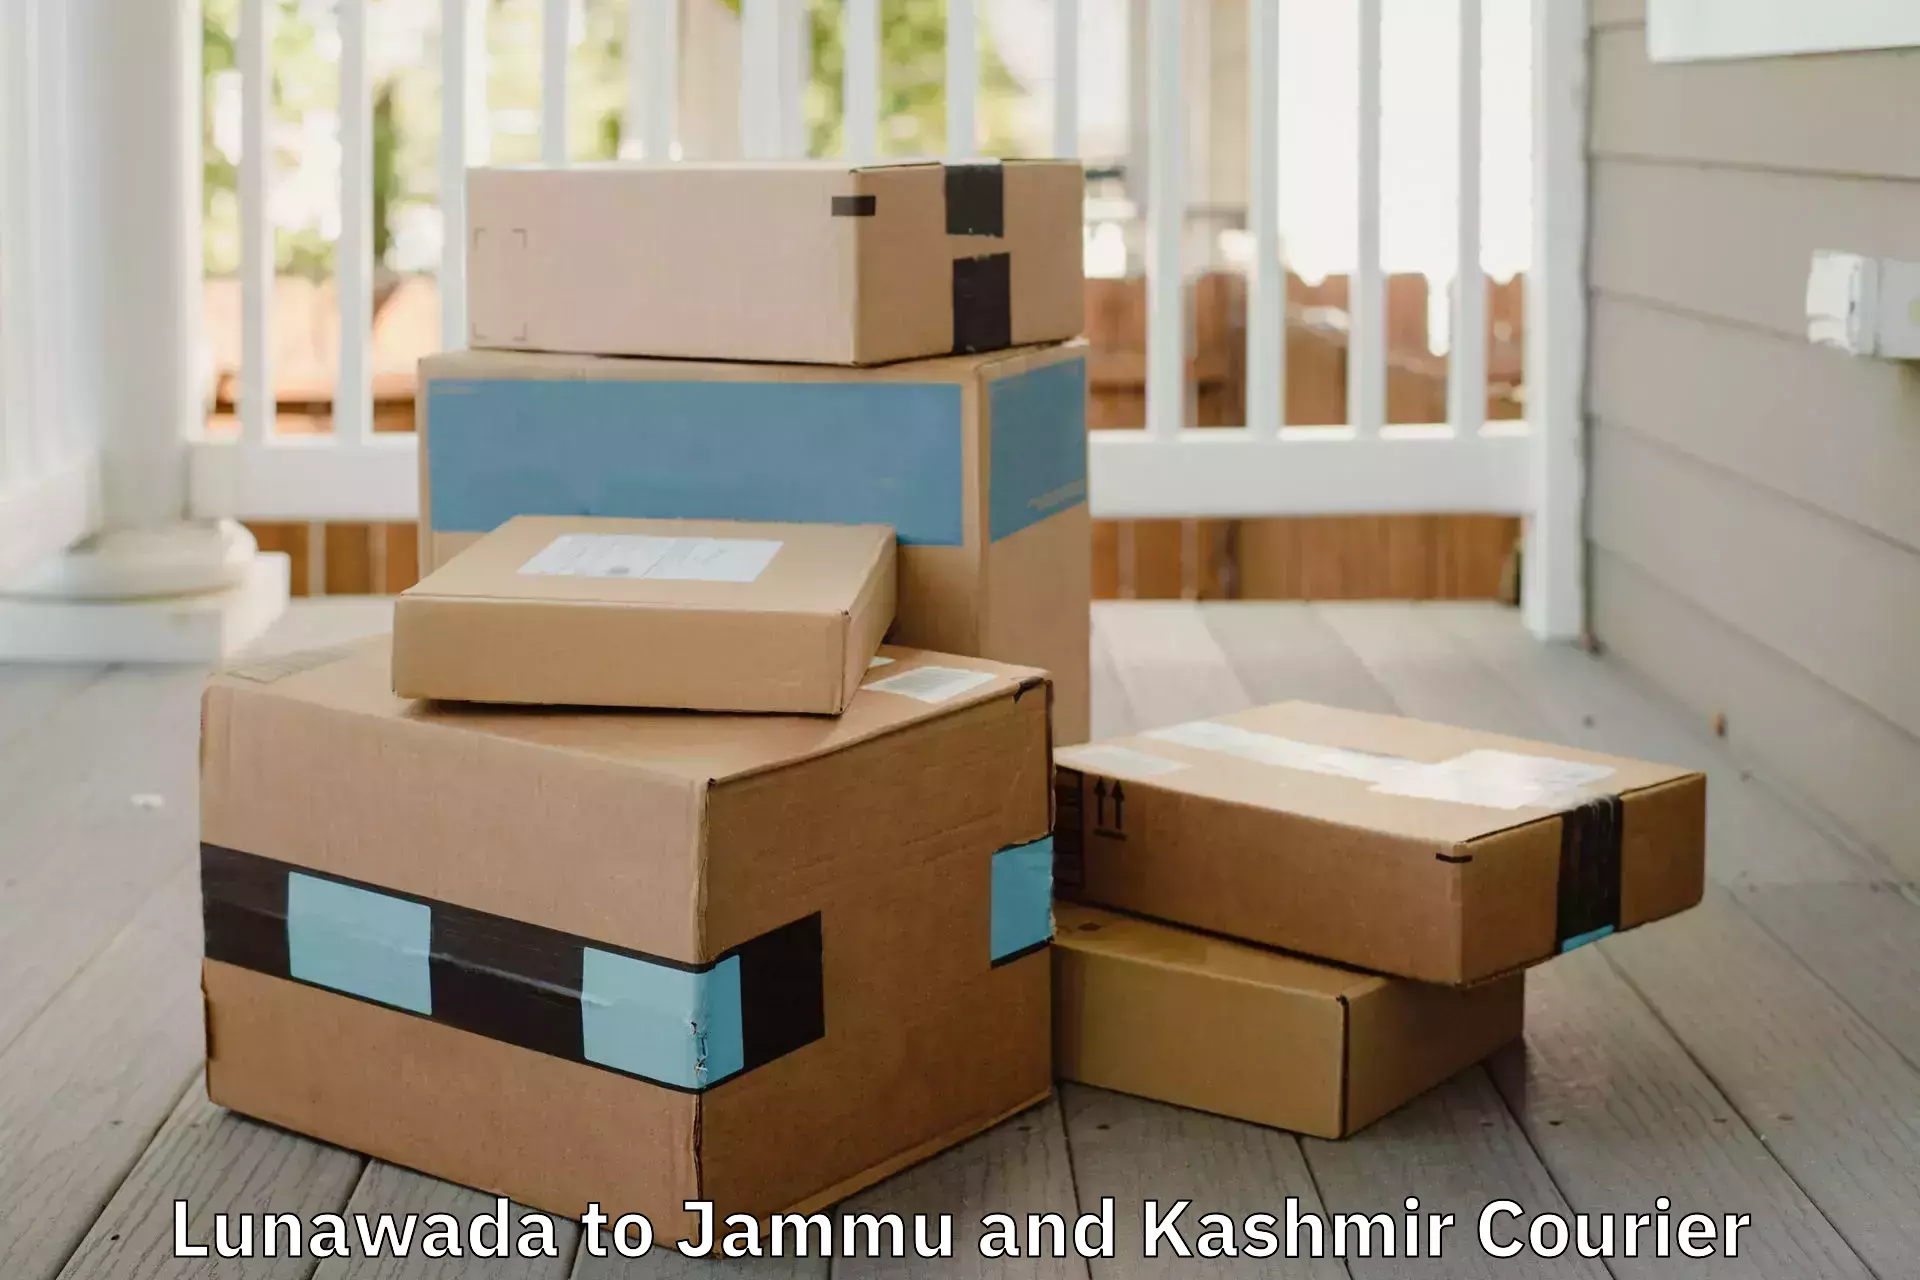 Furniture delivery service Lunawada to University of Kashmir Srinagar